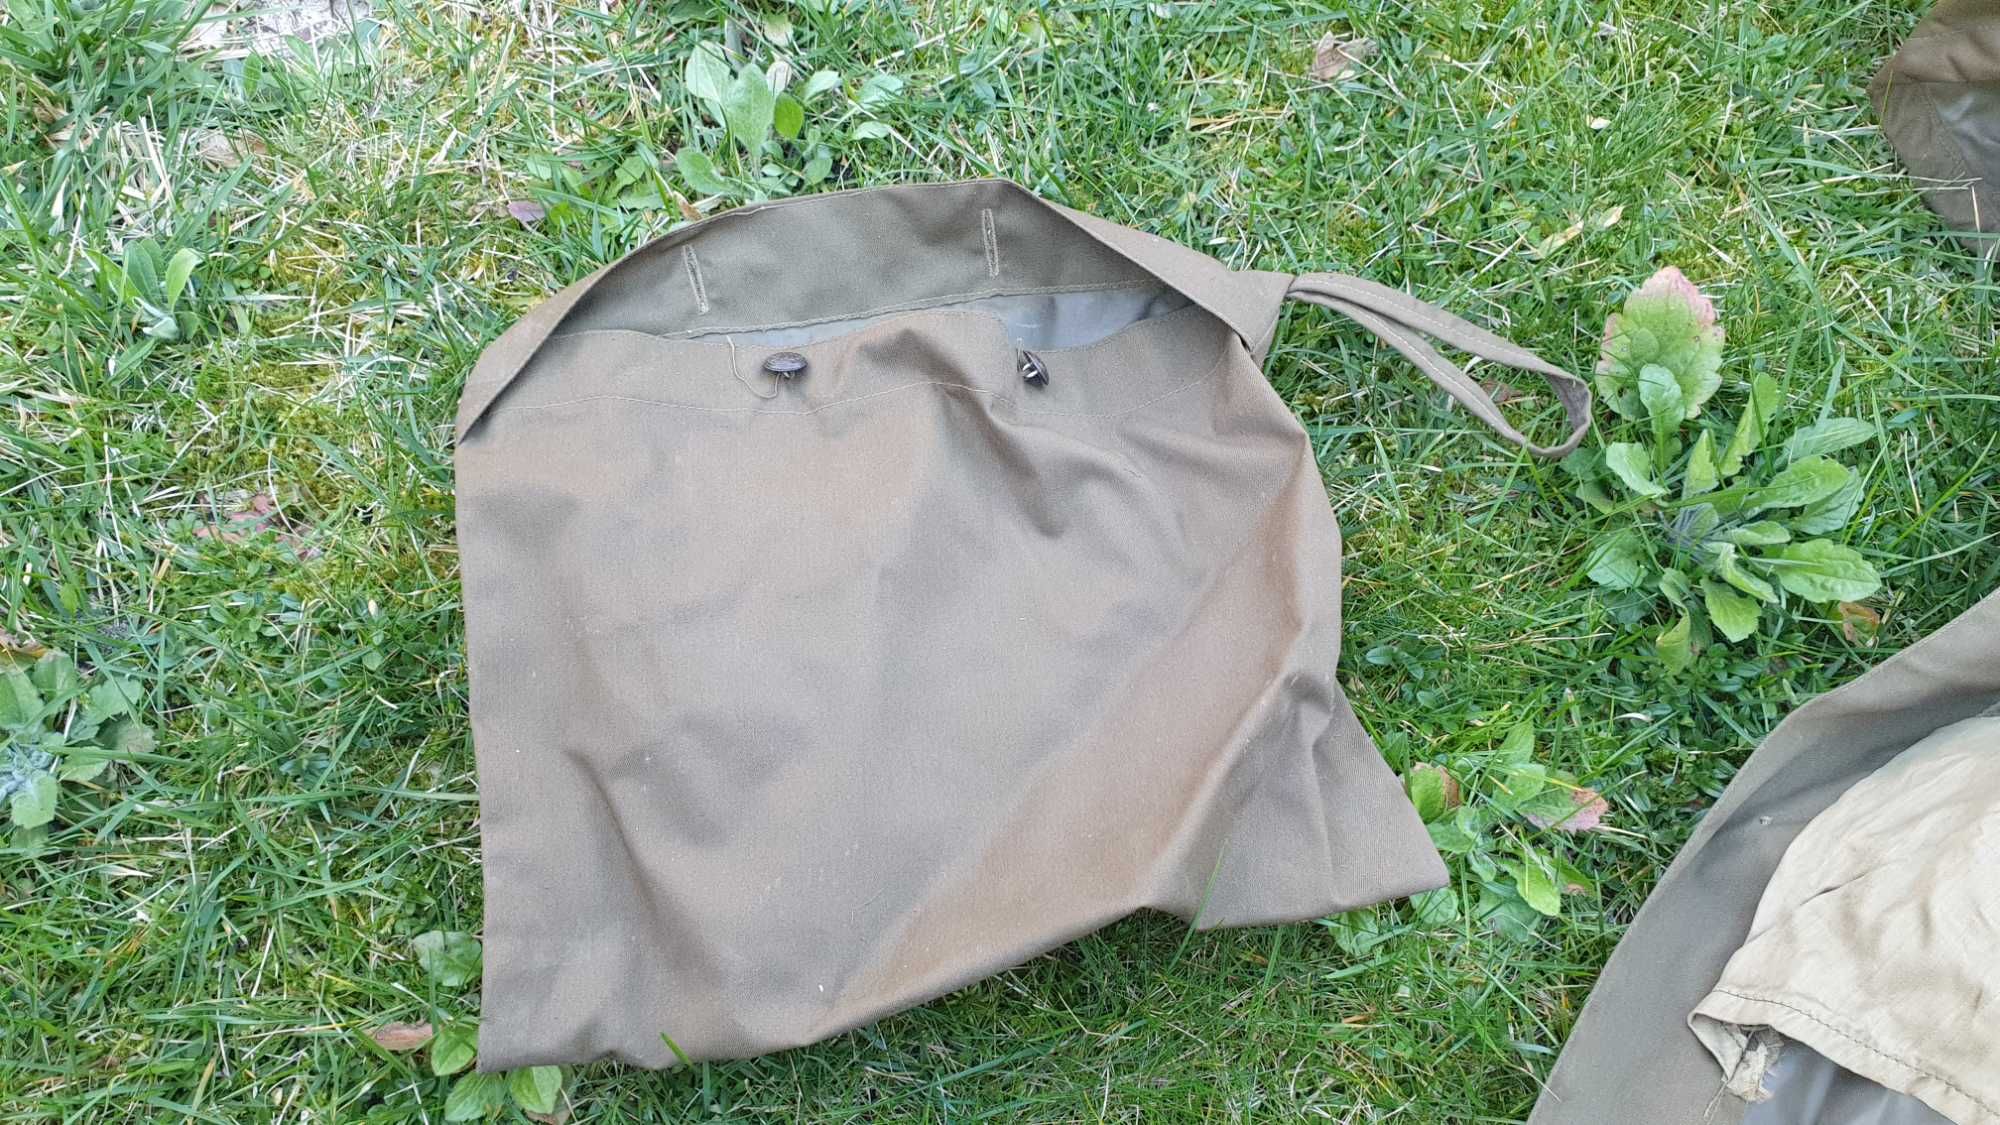 płaszcz narzuta wojskowa przeciwdeszczowa z sakiewką wędkarska